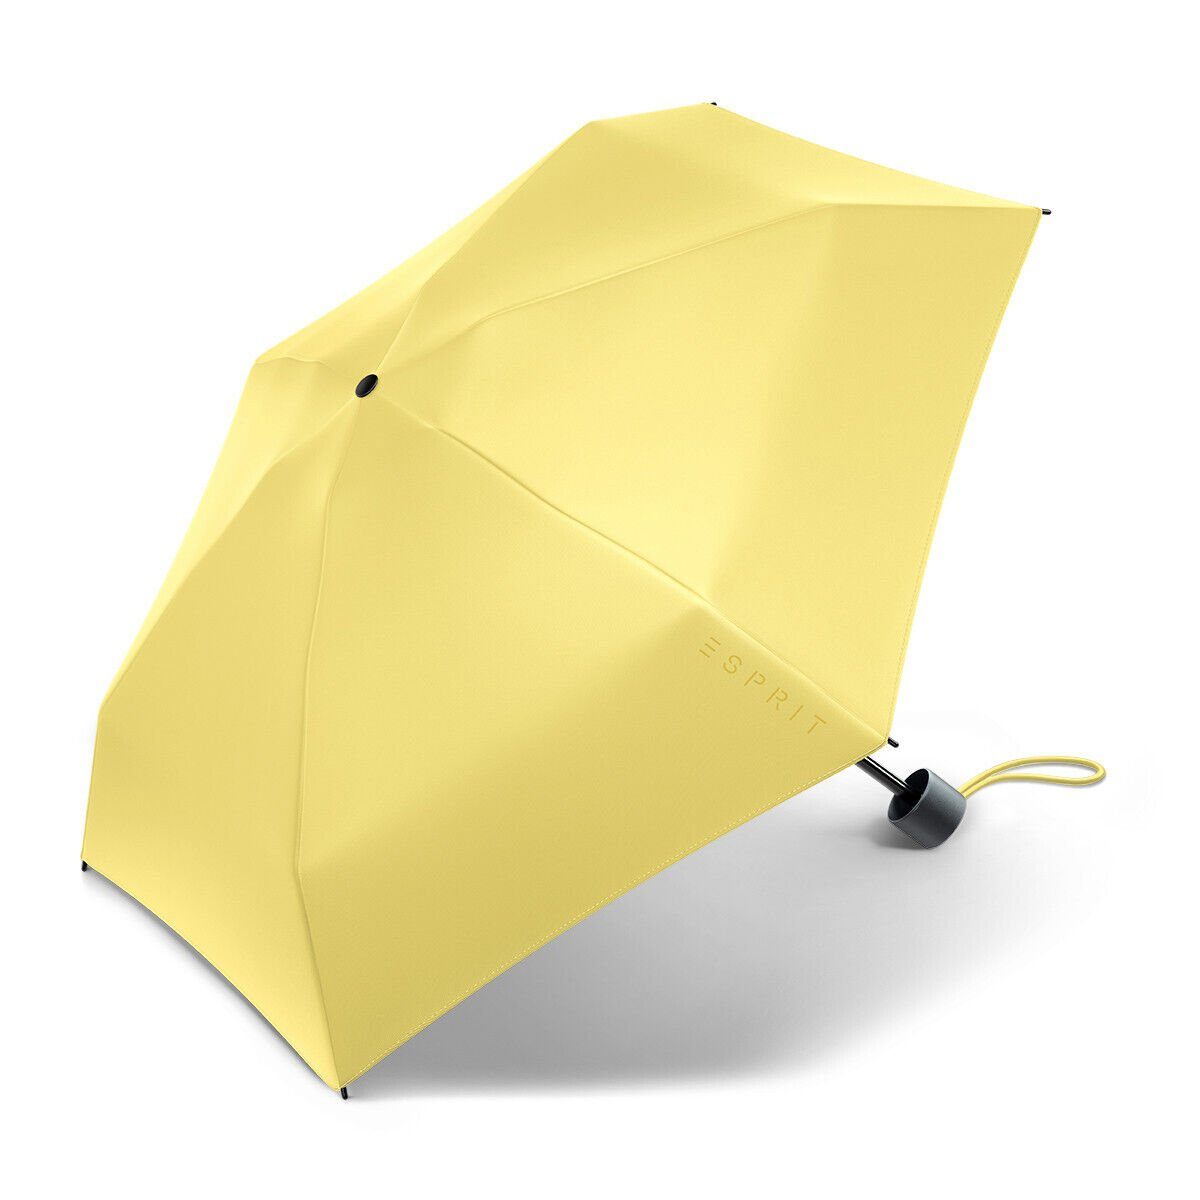 Neu eingetroffen Esprit Taschenregenschirm kompakter cream Petito yellow Regenschirm